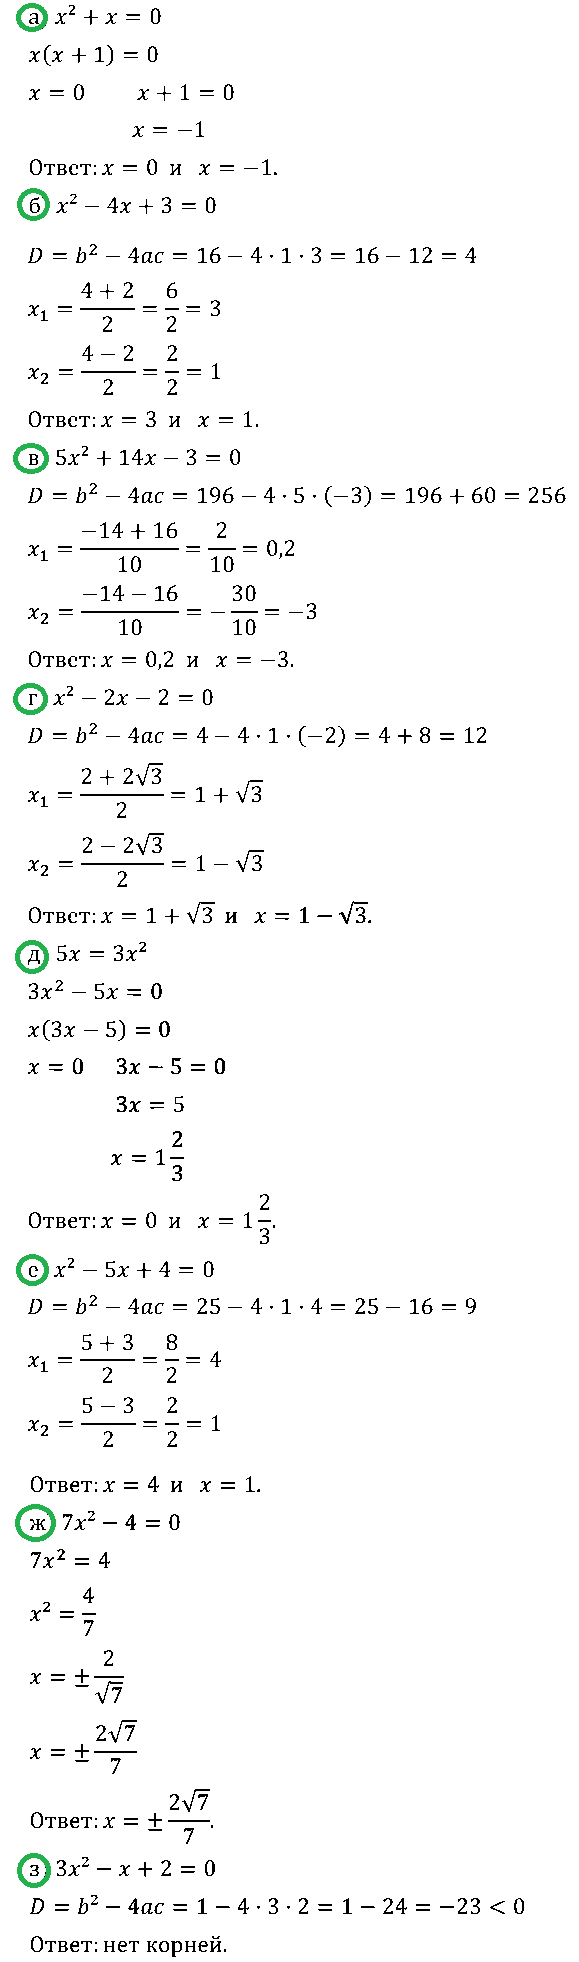 Алгебра 8 Макарычев Самостоятельная С-25